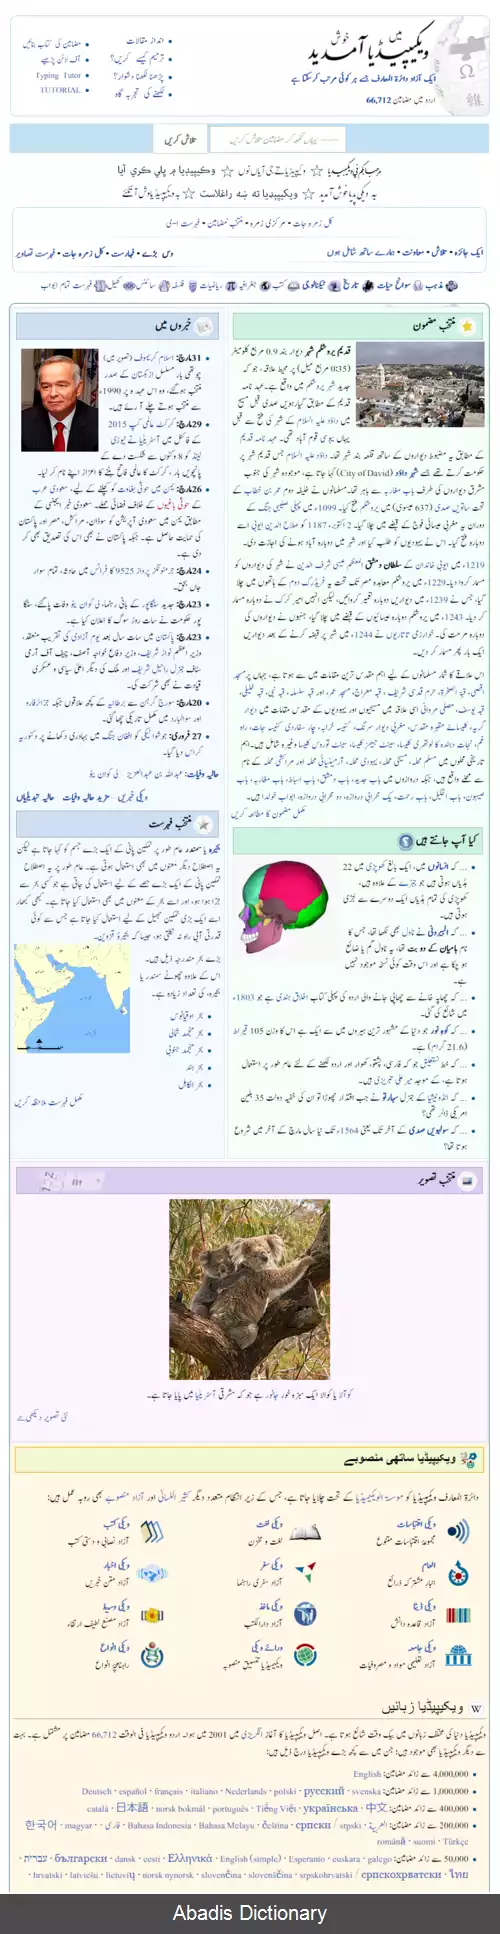 عکس ویکی پدیای اردو